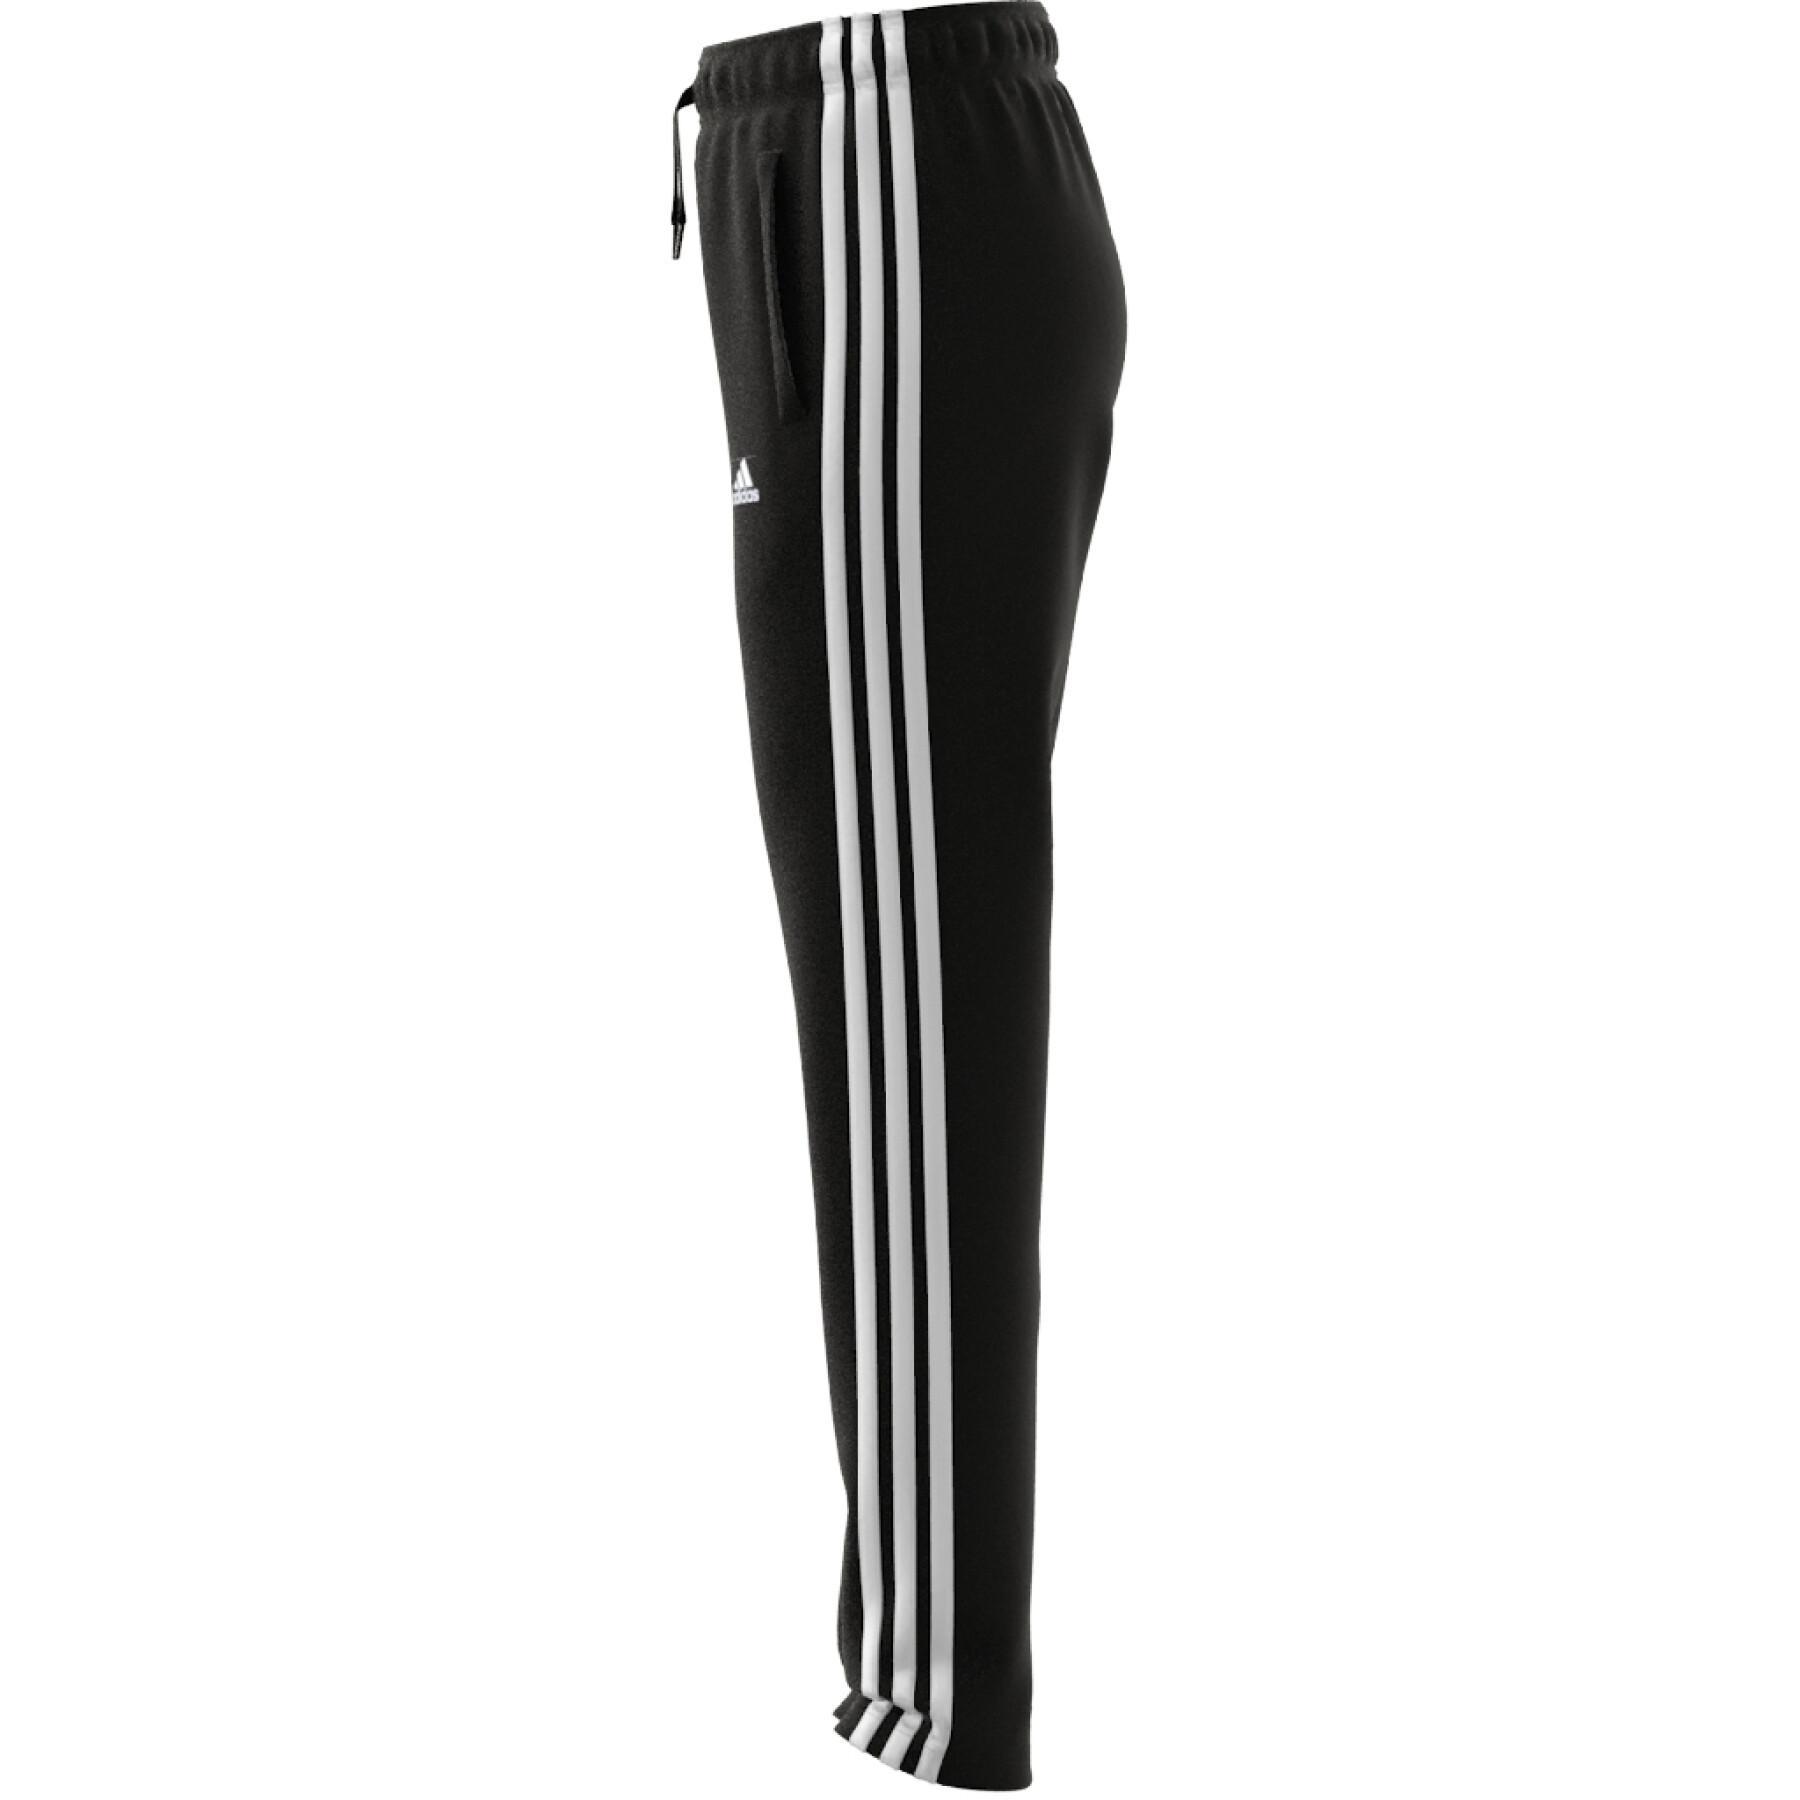 Girl's jogging suit adidas 3-Stripes Essentials